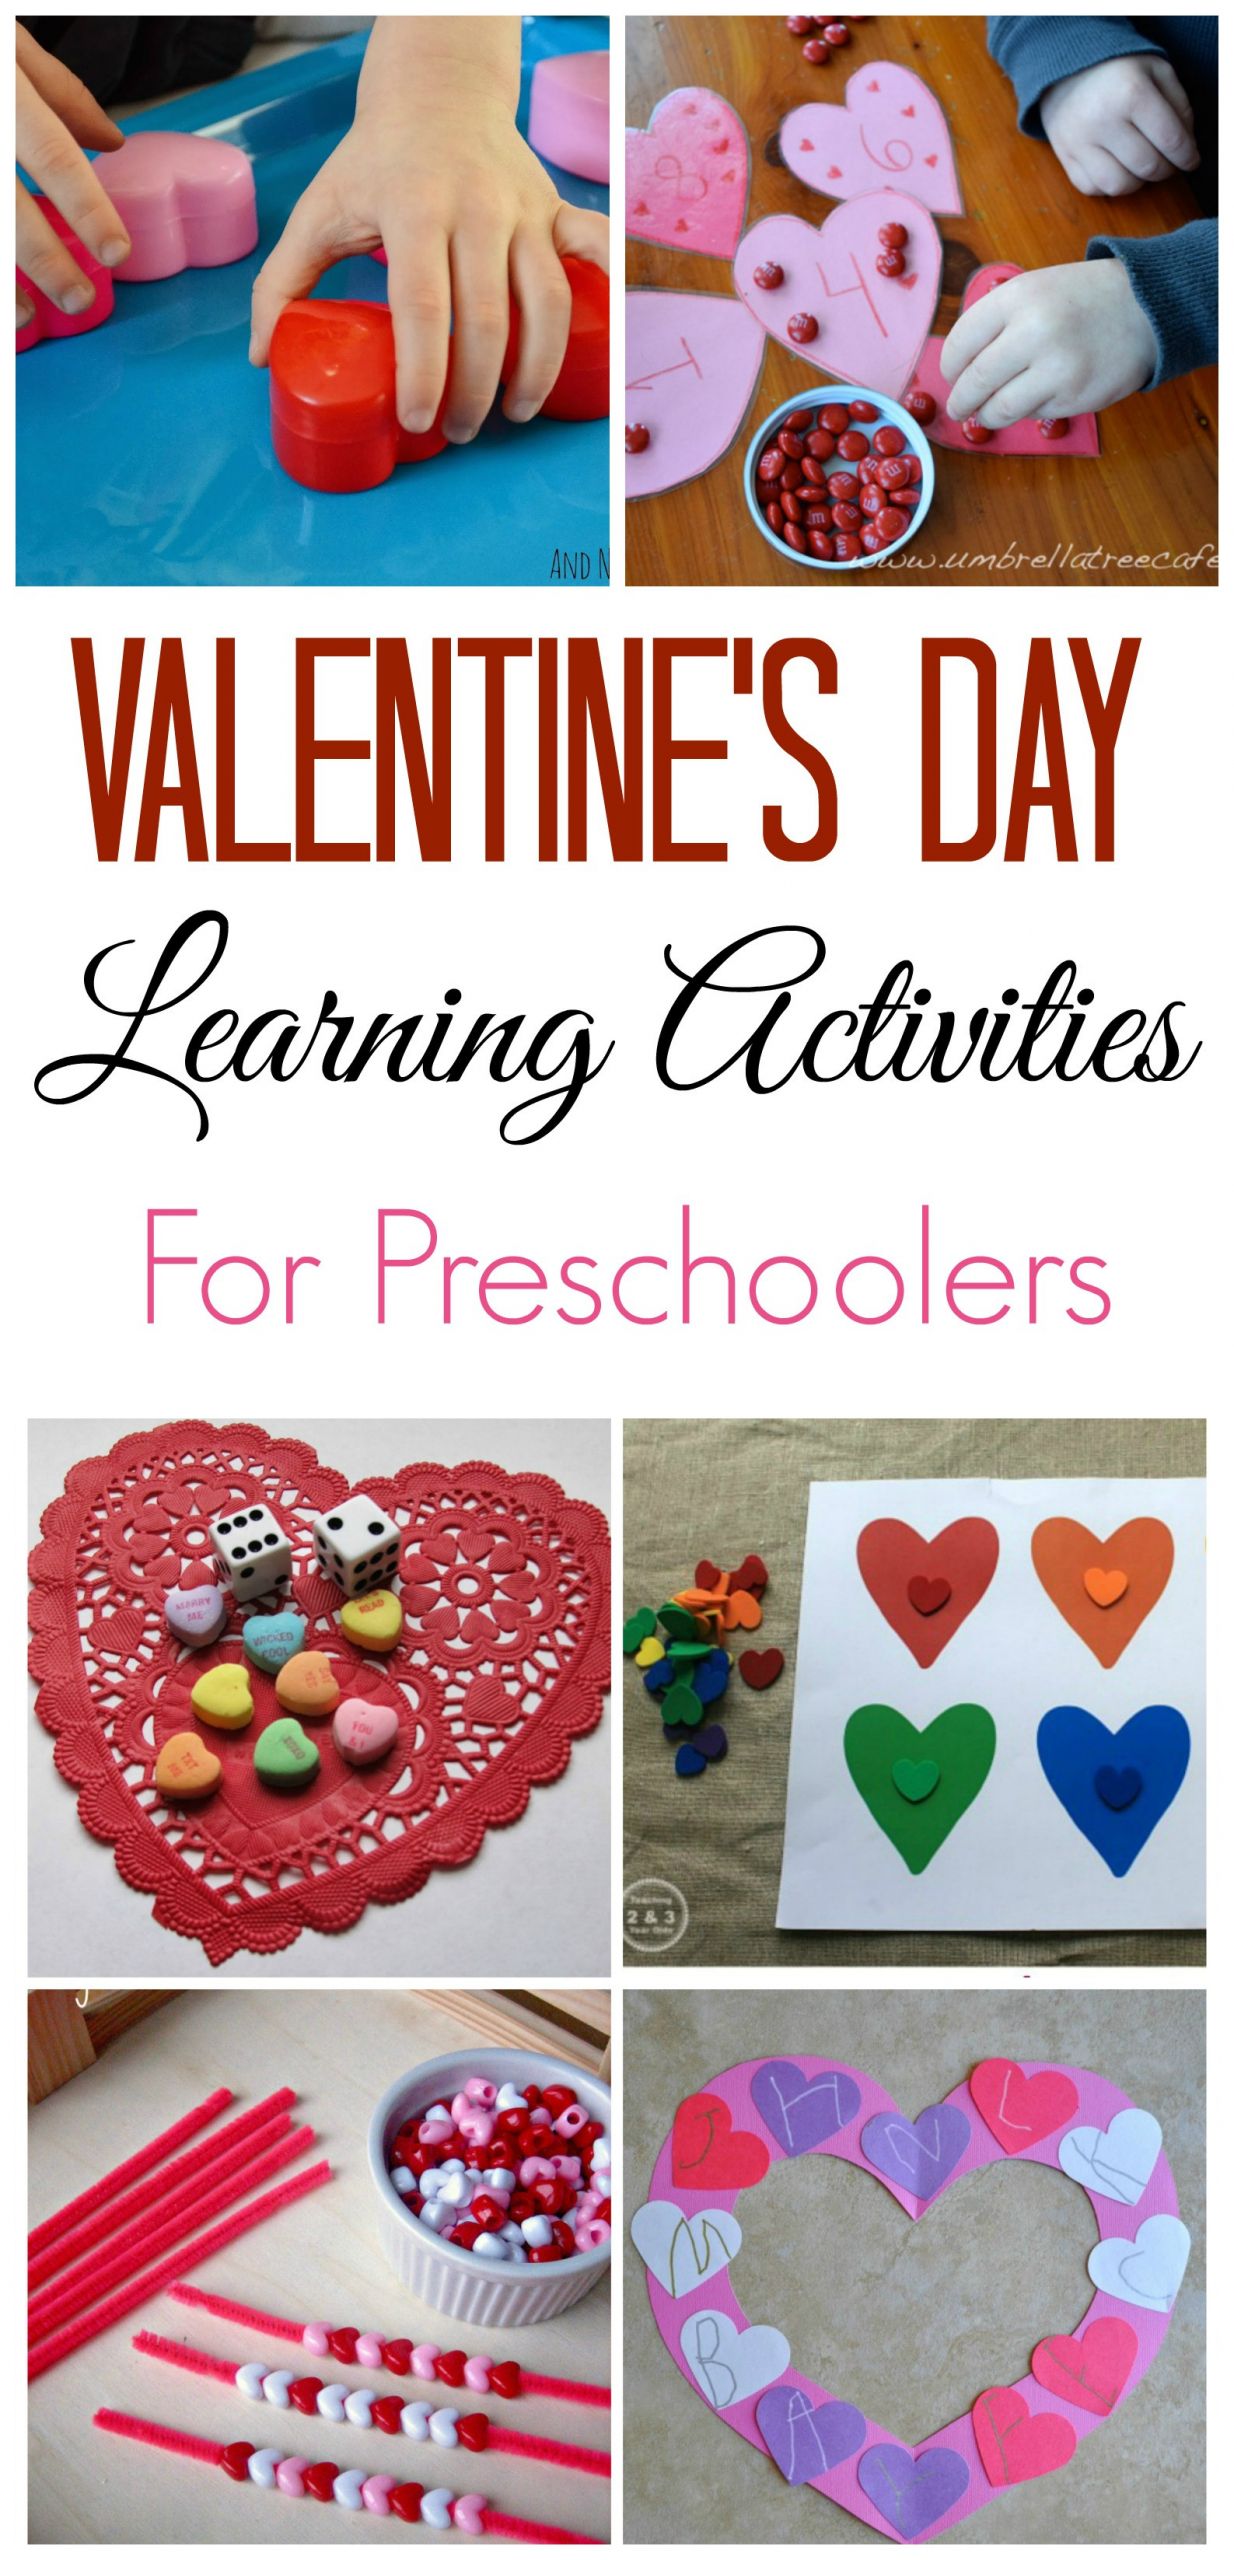 Valentines Day Activities For Preschoolers
 Valentine s Day Learning Activities for Preschoolers